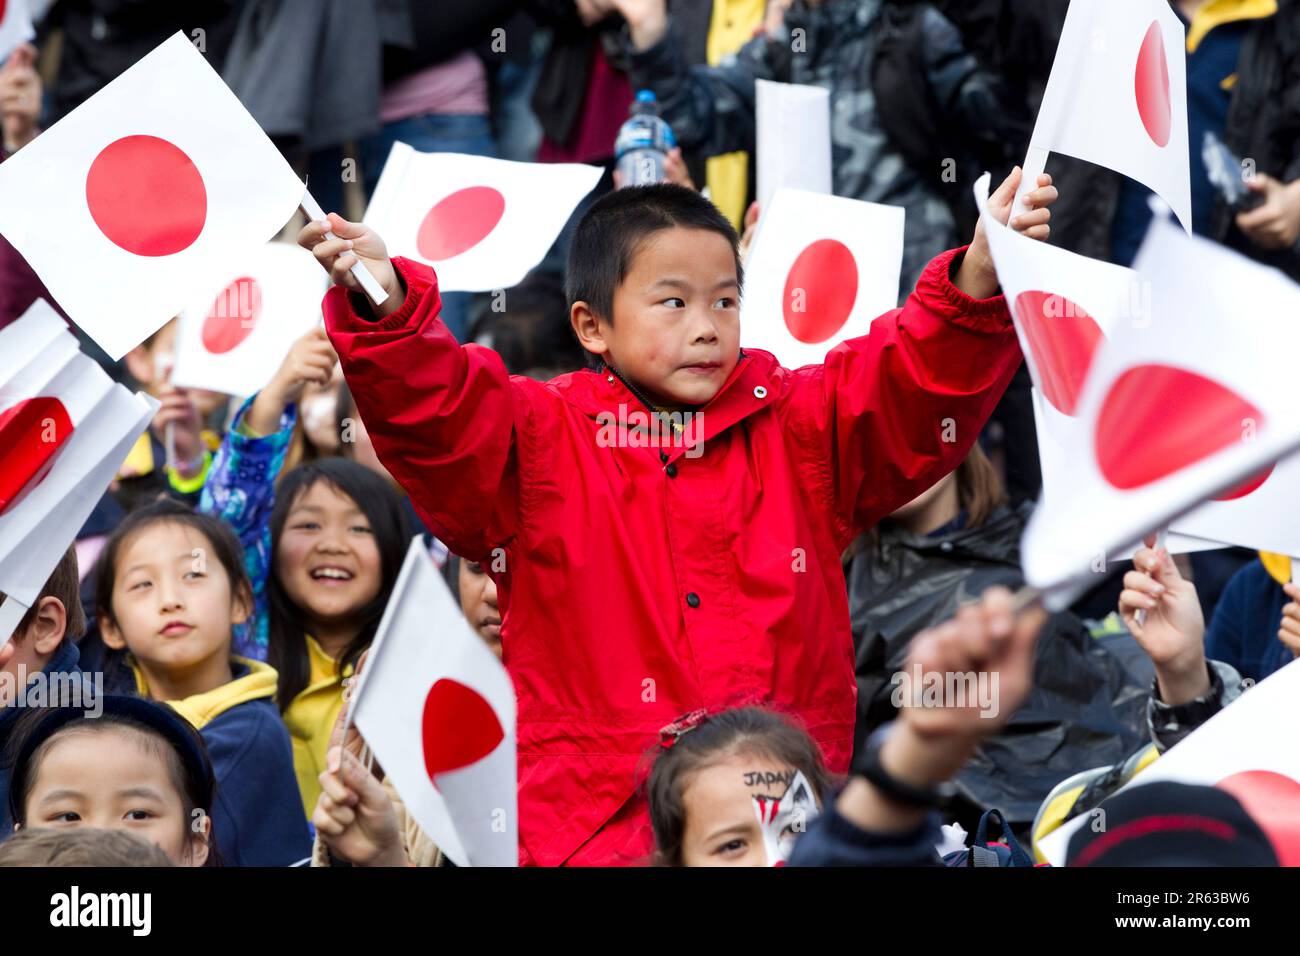 Junge Fans begrüßen das japanische Rugby-Team, während sie die erste offizielle Begrüßung der Rugby-Weltmeisterschaft erhalten: Aotea Square, Auckland, Neuseeland, Donnerstag, 01. September 2011. Stockfoto